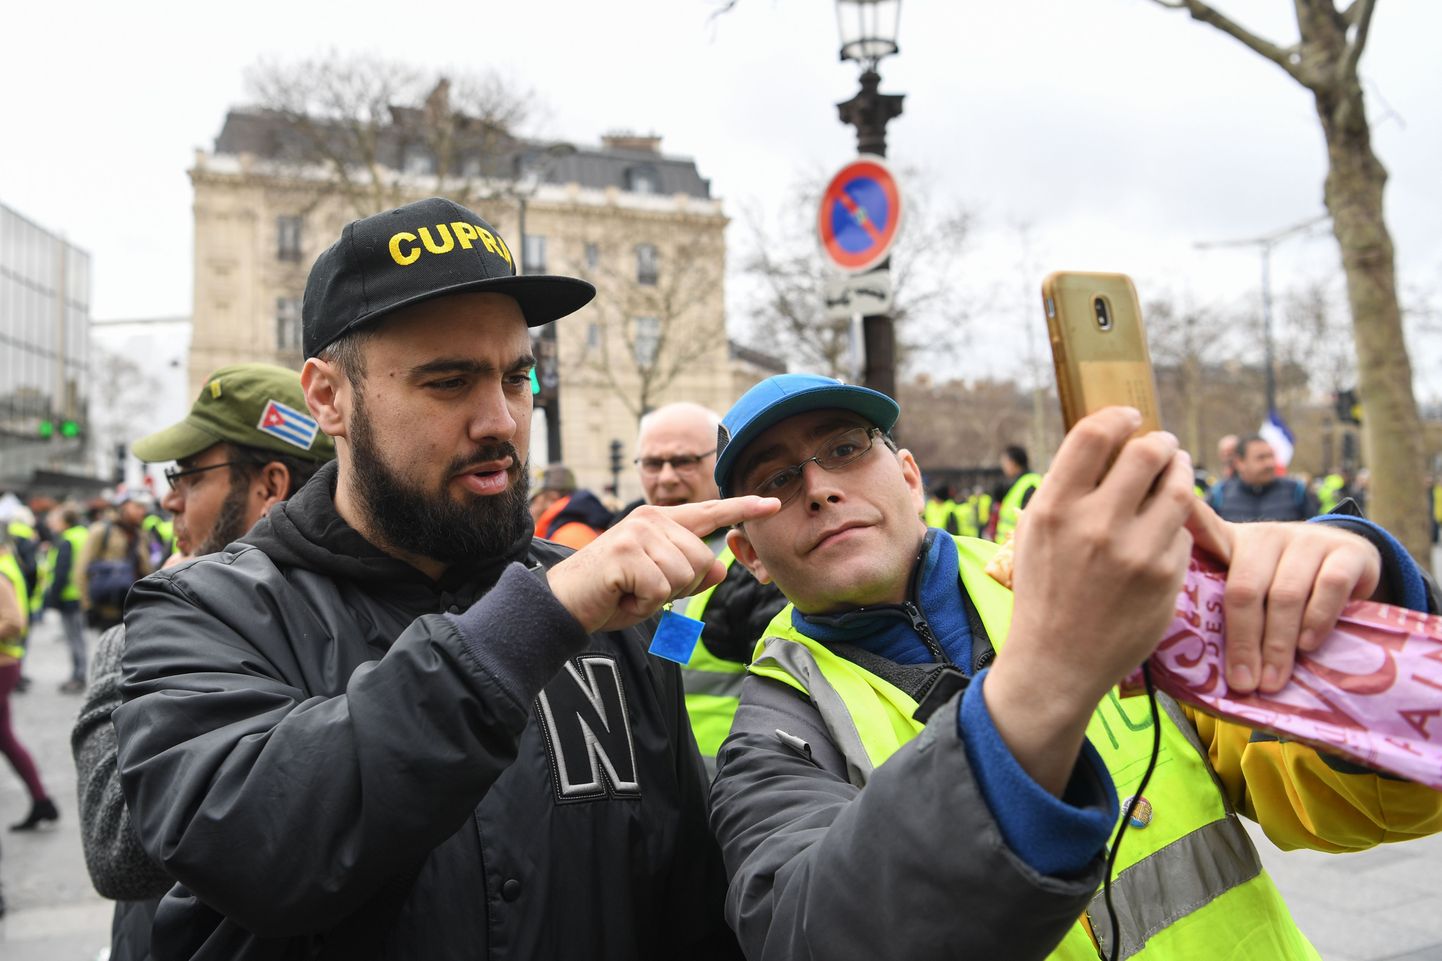 Täna Pariisi tänavatele meelt avaldanud kollavestide tähelepanu pälvis Eric Drouet (vasakul), kes on kollavestide liikumise üks juhtfiguure ja kellega soovisid täna pilti teha paljud protestijad.